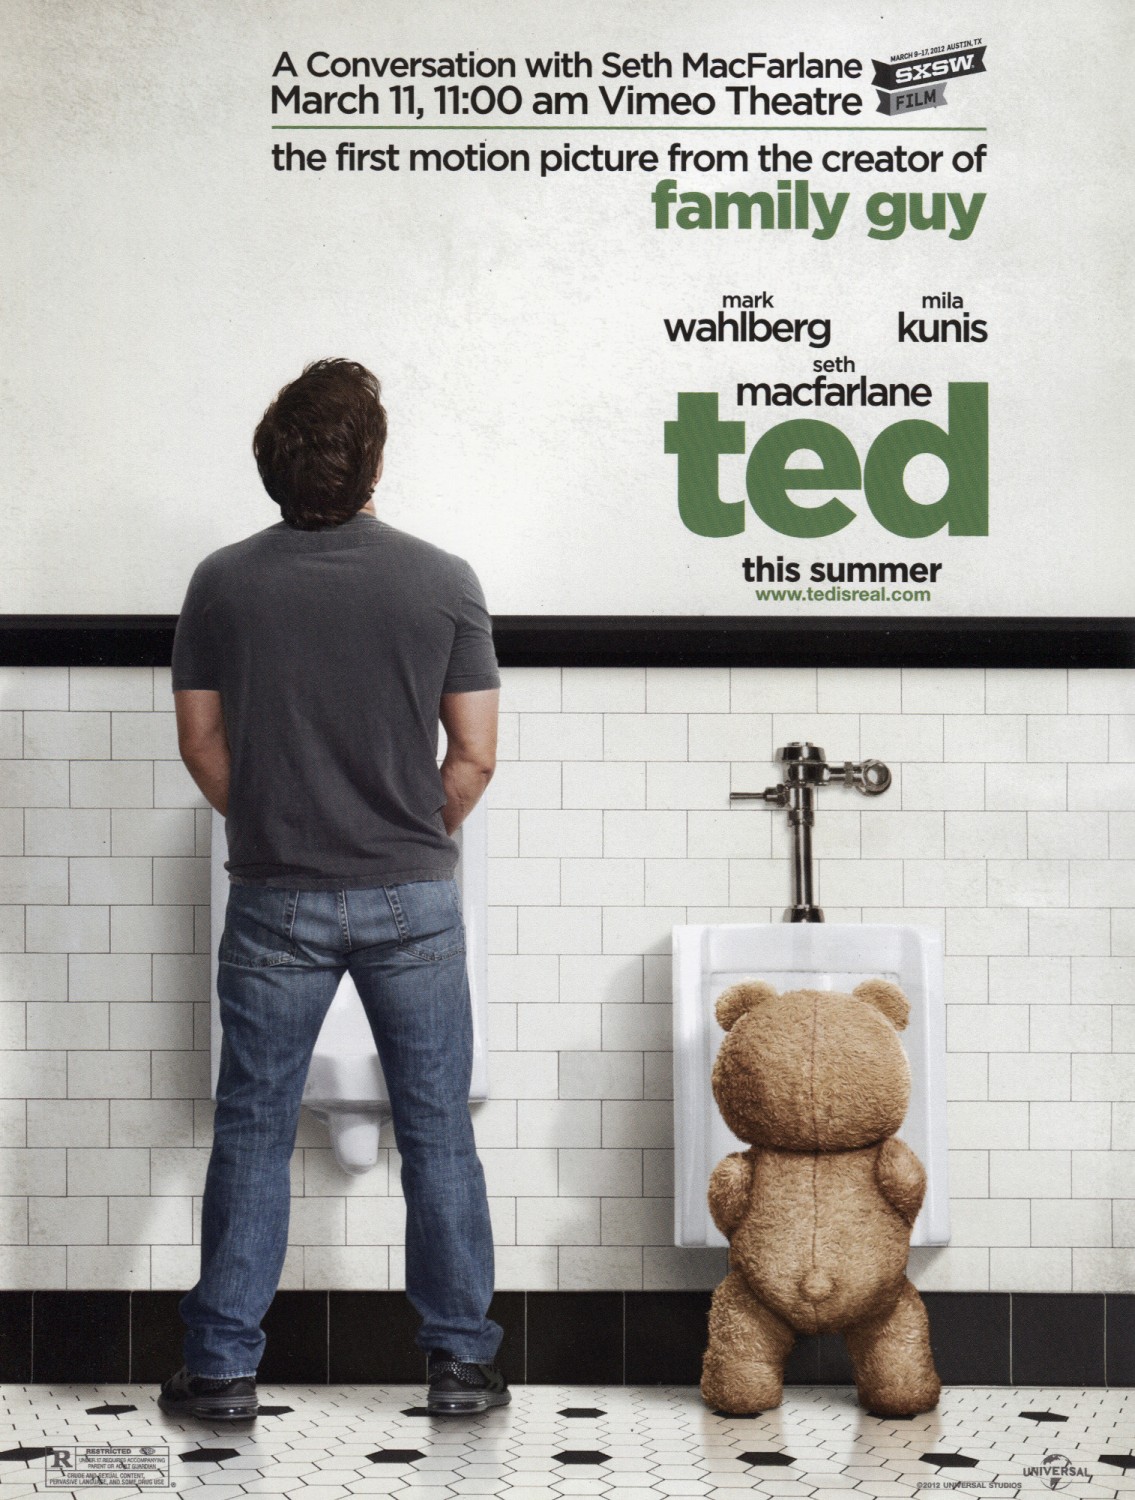 http://3.bp.blogspot.com/-Kg0Oe9bRWds/T_CwojVsNvI/AAAAAAAAFj4/dKQr9nvC9iA/s1600/Ted-movie-poster-urinals.jpeg